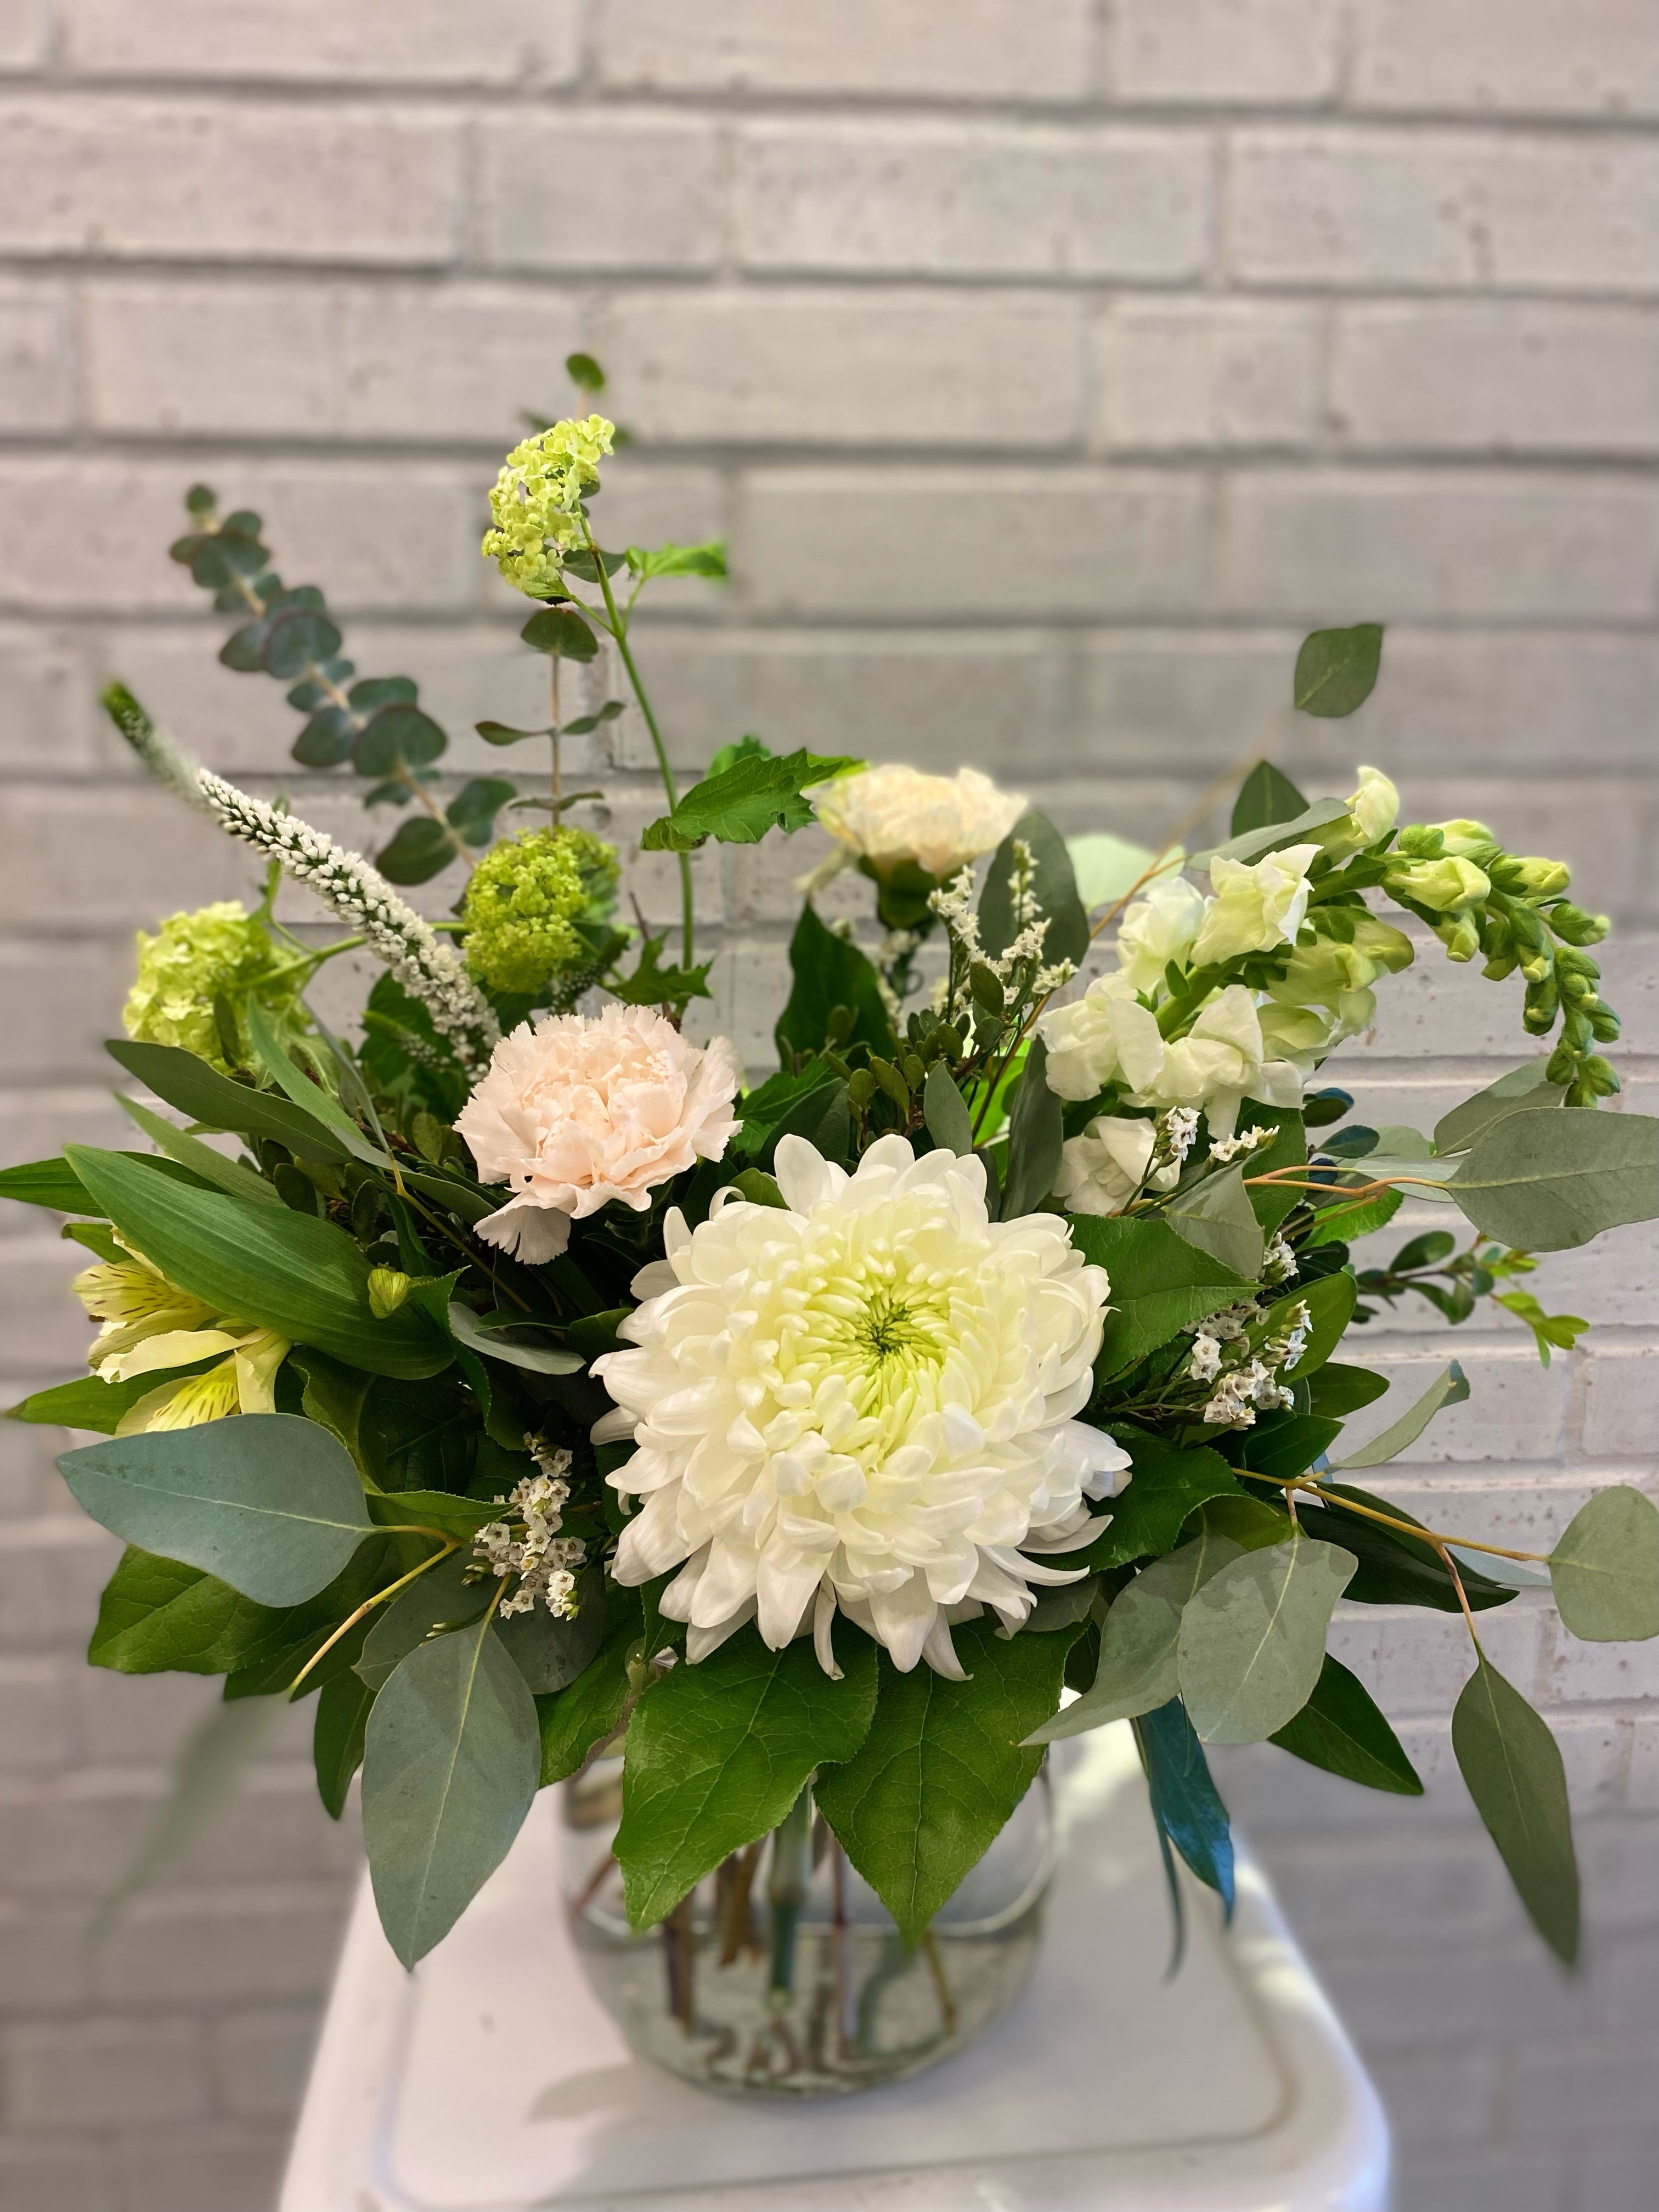 Custom Vase/Container Floral Arrangement